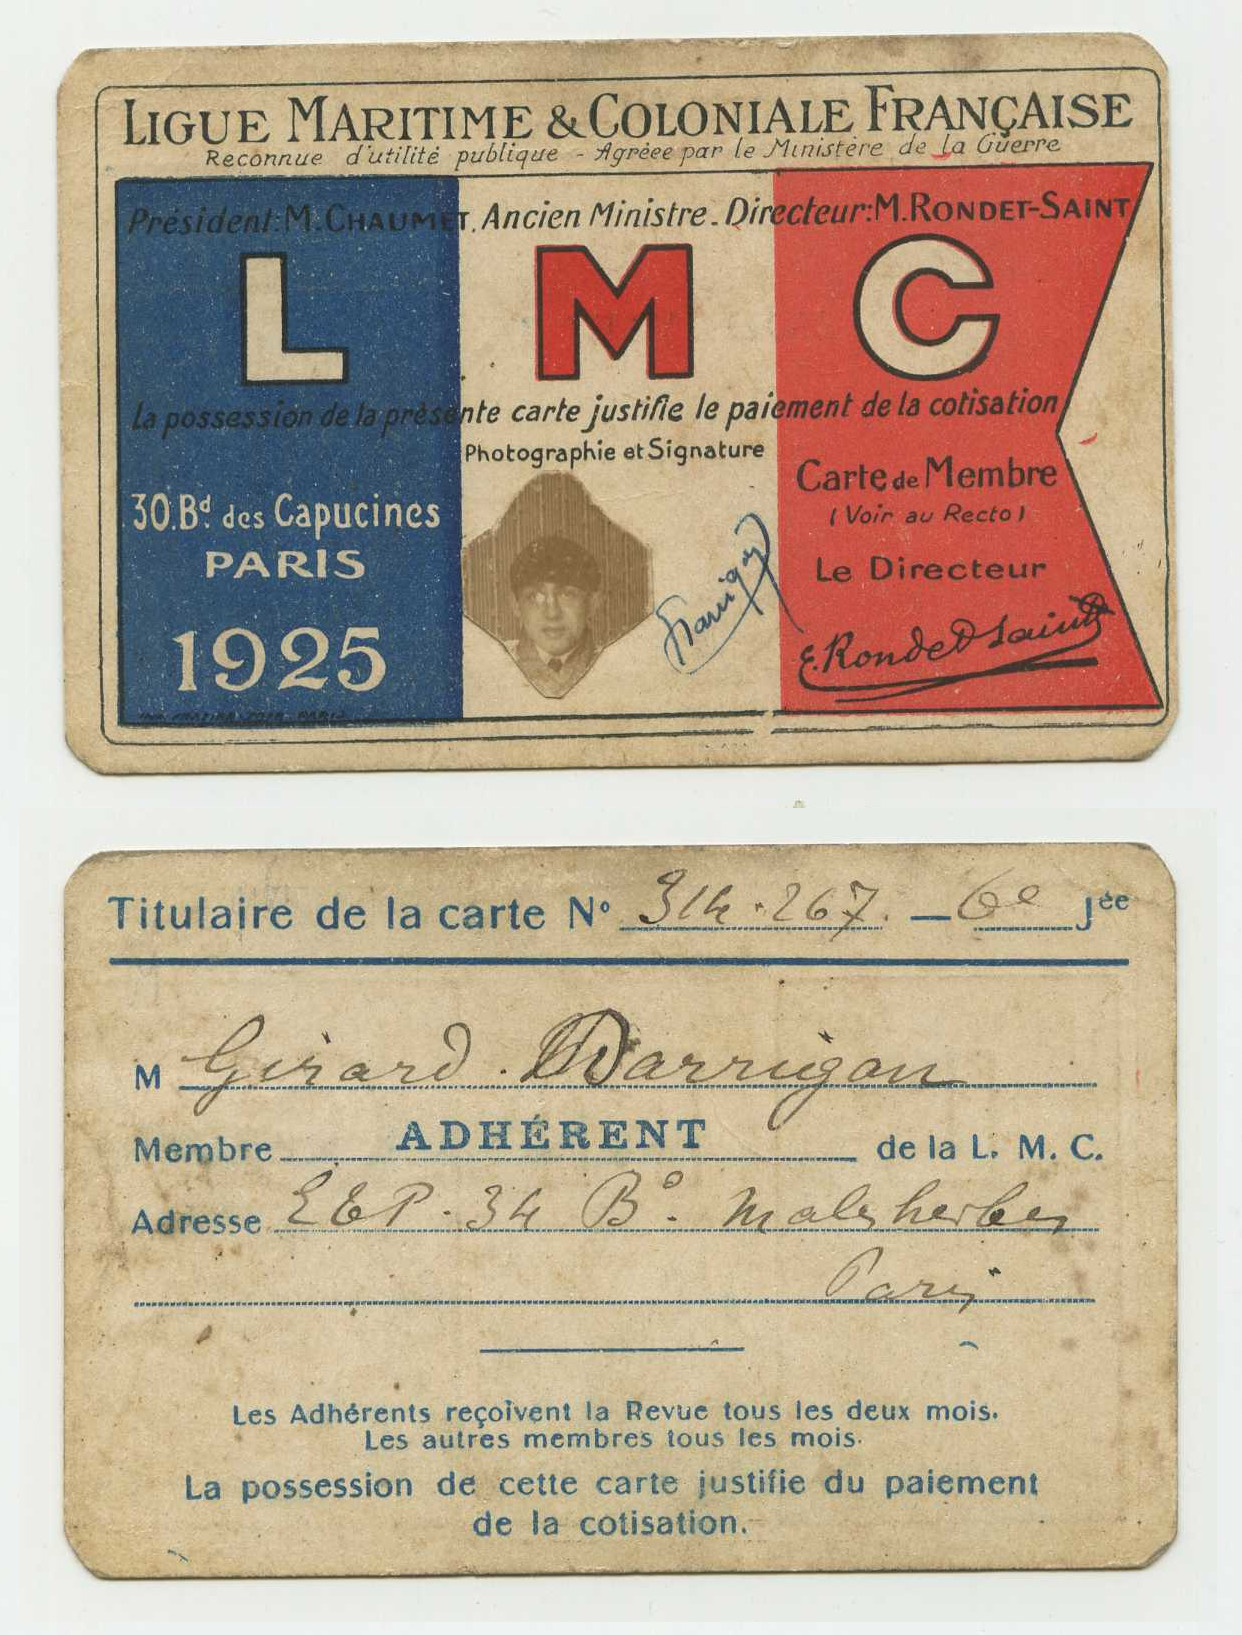 Carte d'adhérent à la Ligue Maritime et Coloniale Française de Gérard Darrigan (1925)